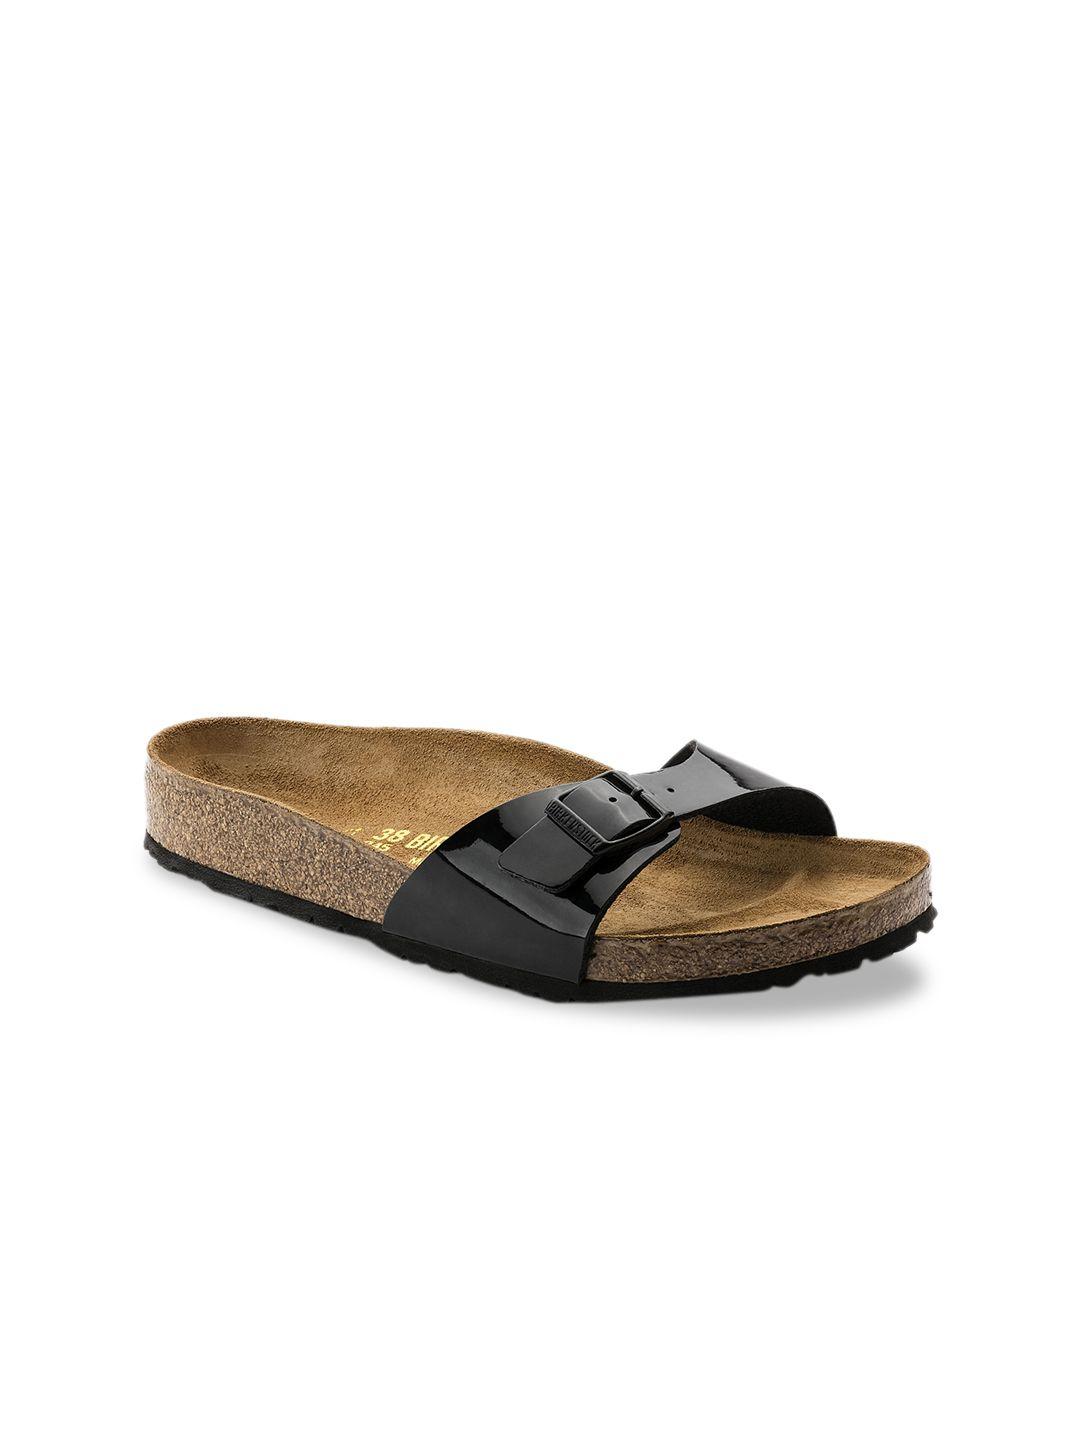 birkenstock black madrid birko-flor narrow width sandals